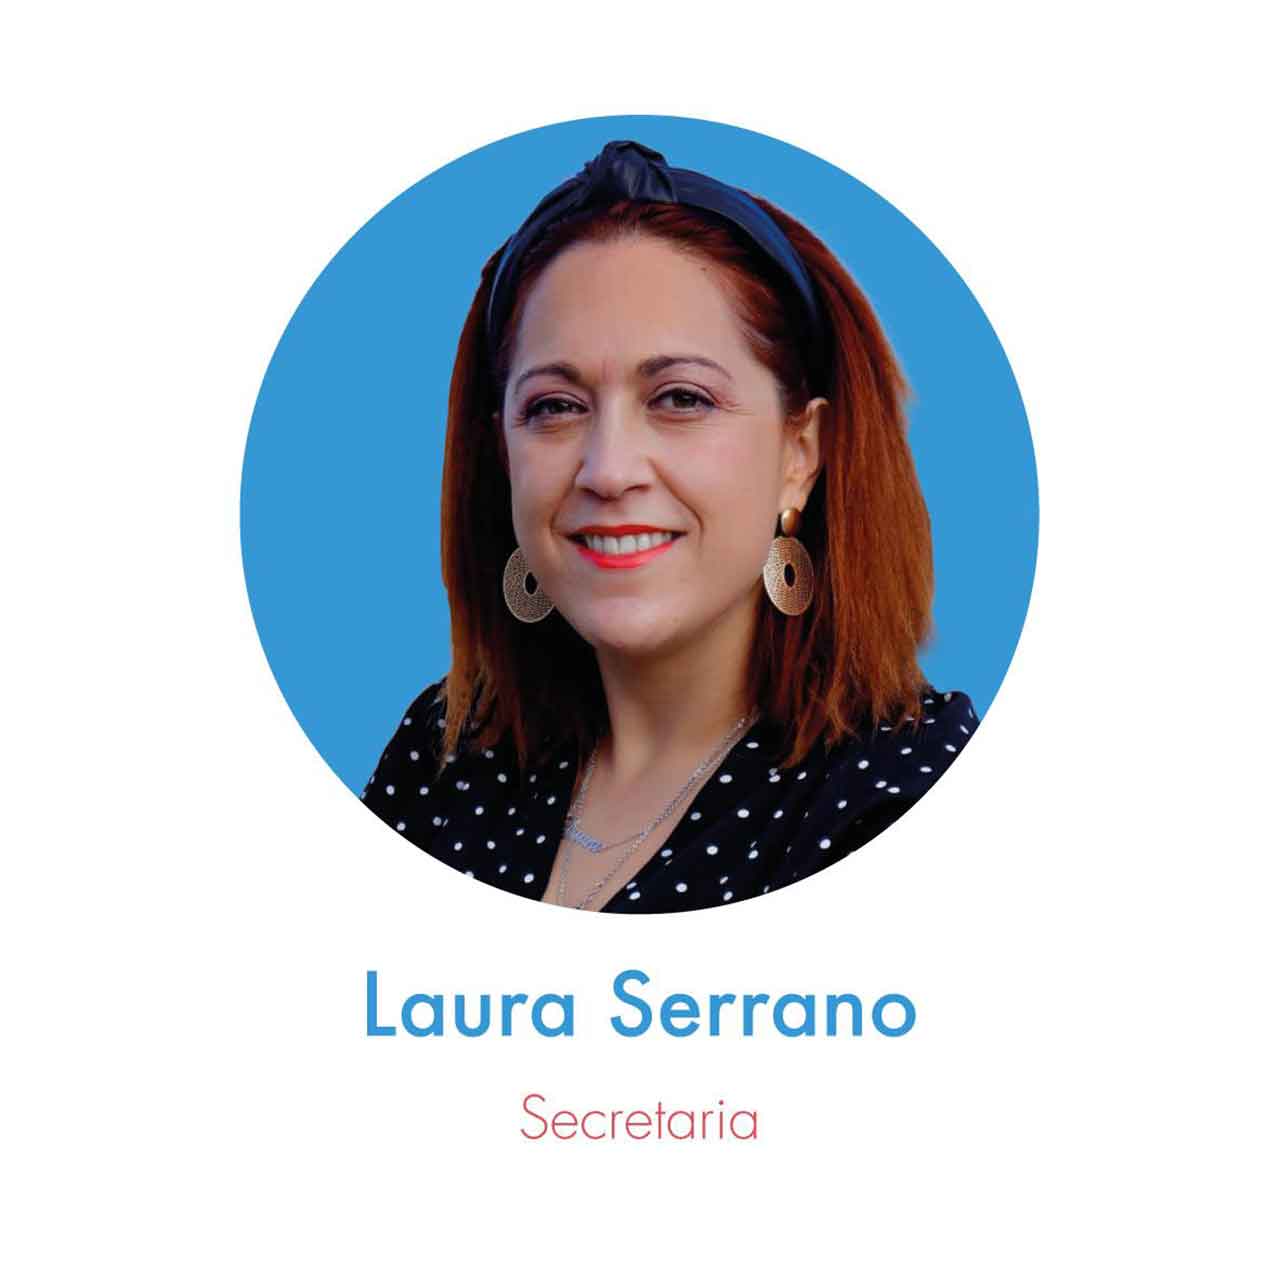 Laura Serrano Cruz